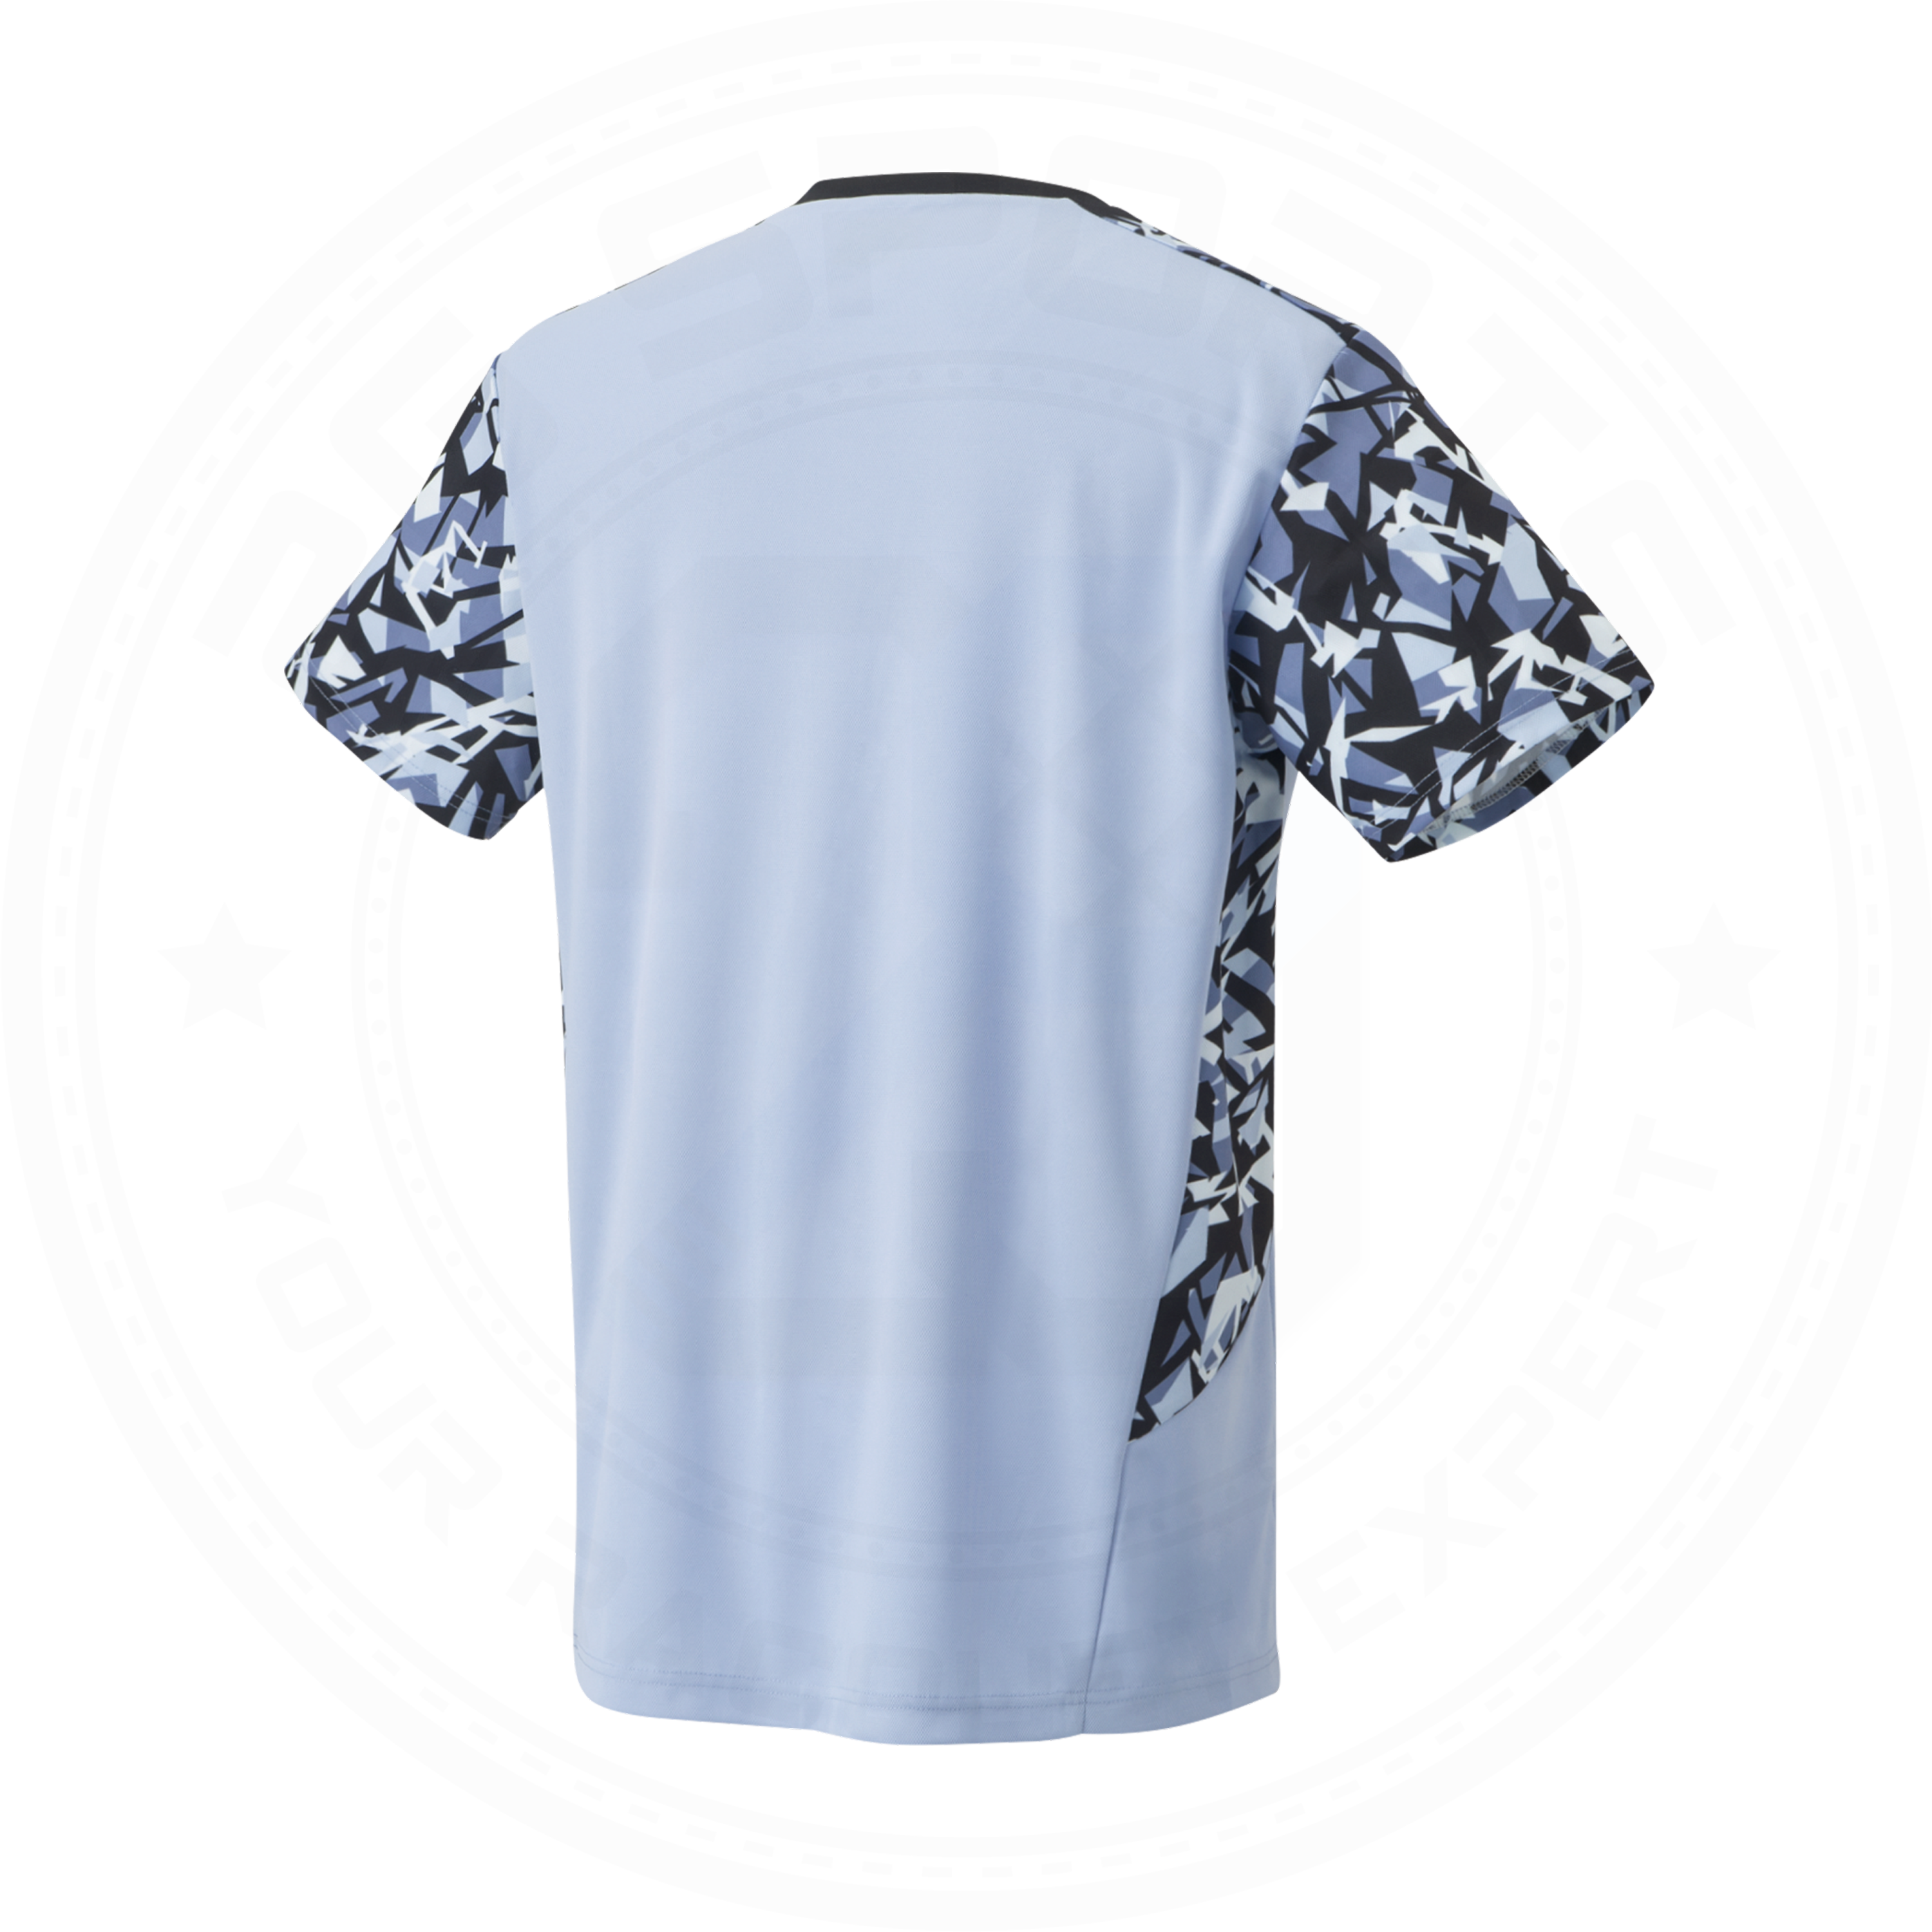 Yonex Japan National Badminton/ Sports Shirt 10553EX FeltBlue UNISEX (Clearance)